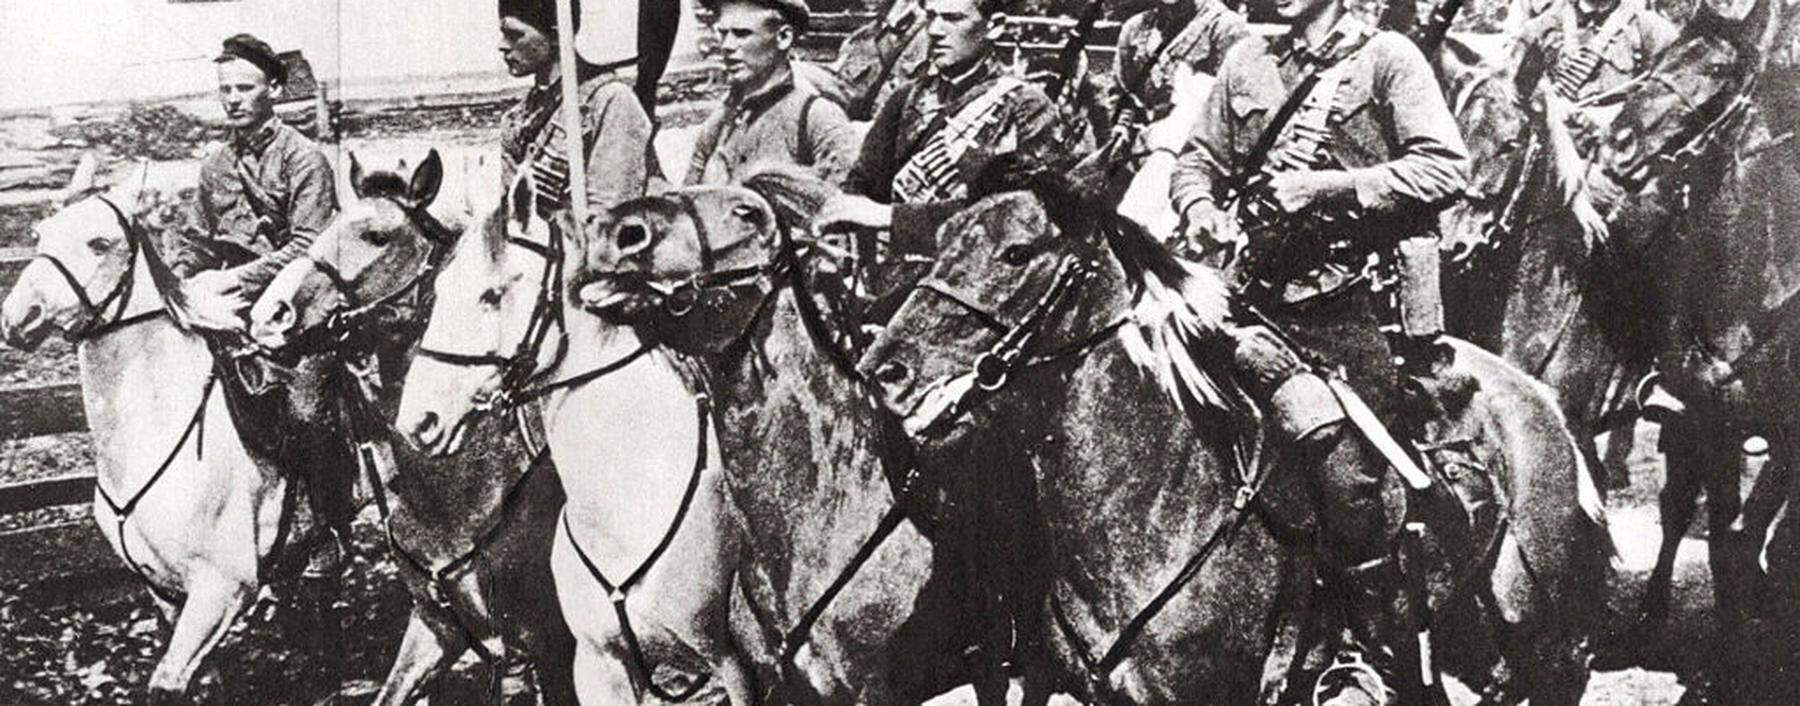 Bizarre Kampfhandlungen: sowjetische Kavallerie, ausgestattet mit Lanzen, Säbeln und Beiwagen mit Maschinengewehren.